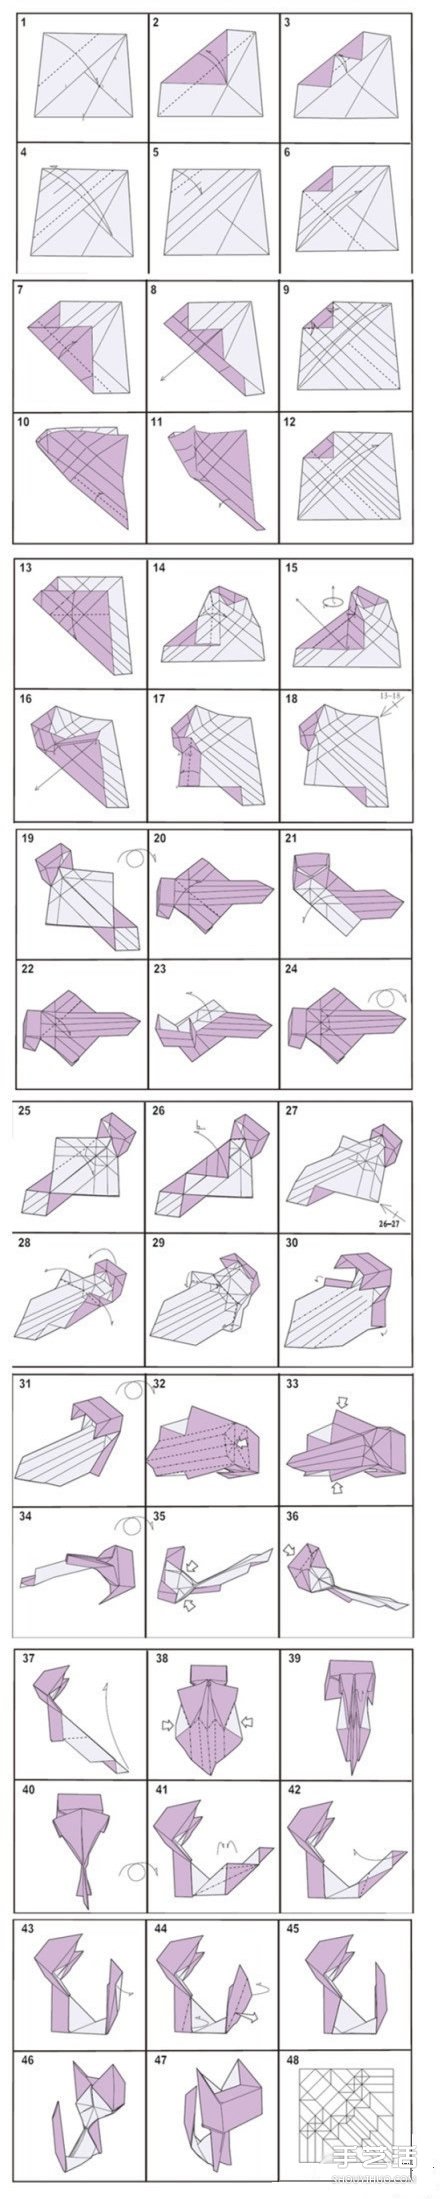 折纸立体猫咪的折法图解 立体猫咪折纸教程